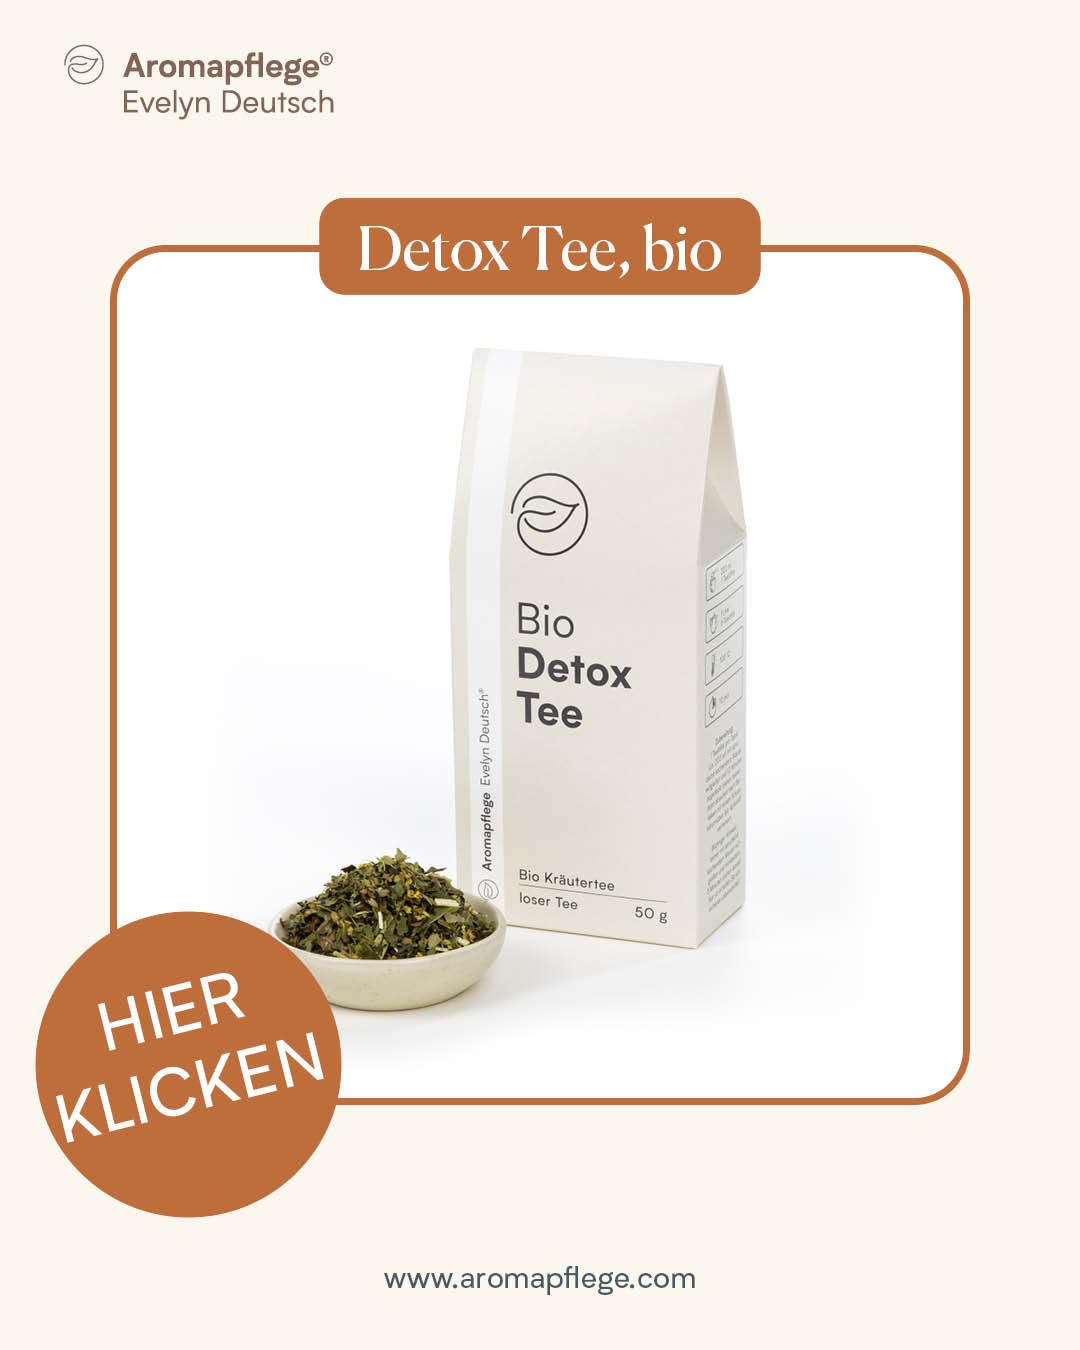 Detox Tee, bio